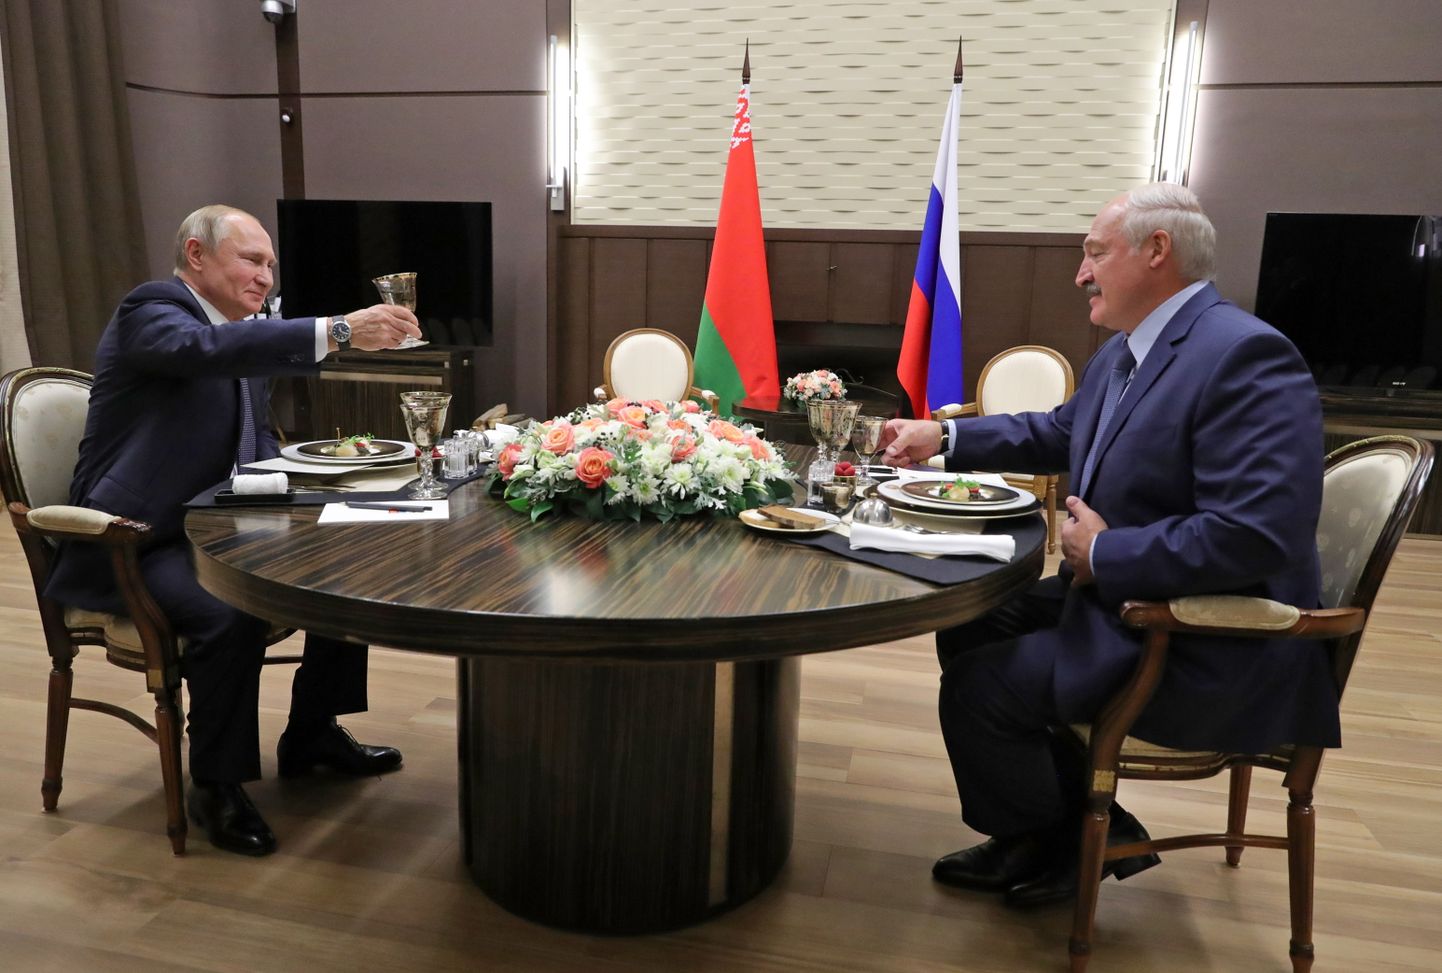 Путин и Лукашенко подняли тост за интеграцию, но договориться о ней им пока не удалось